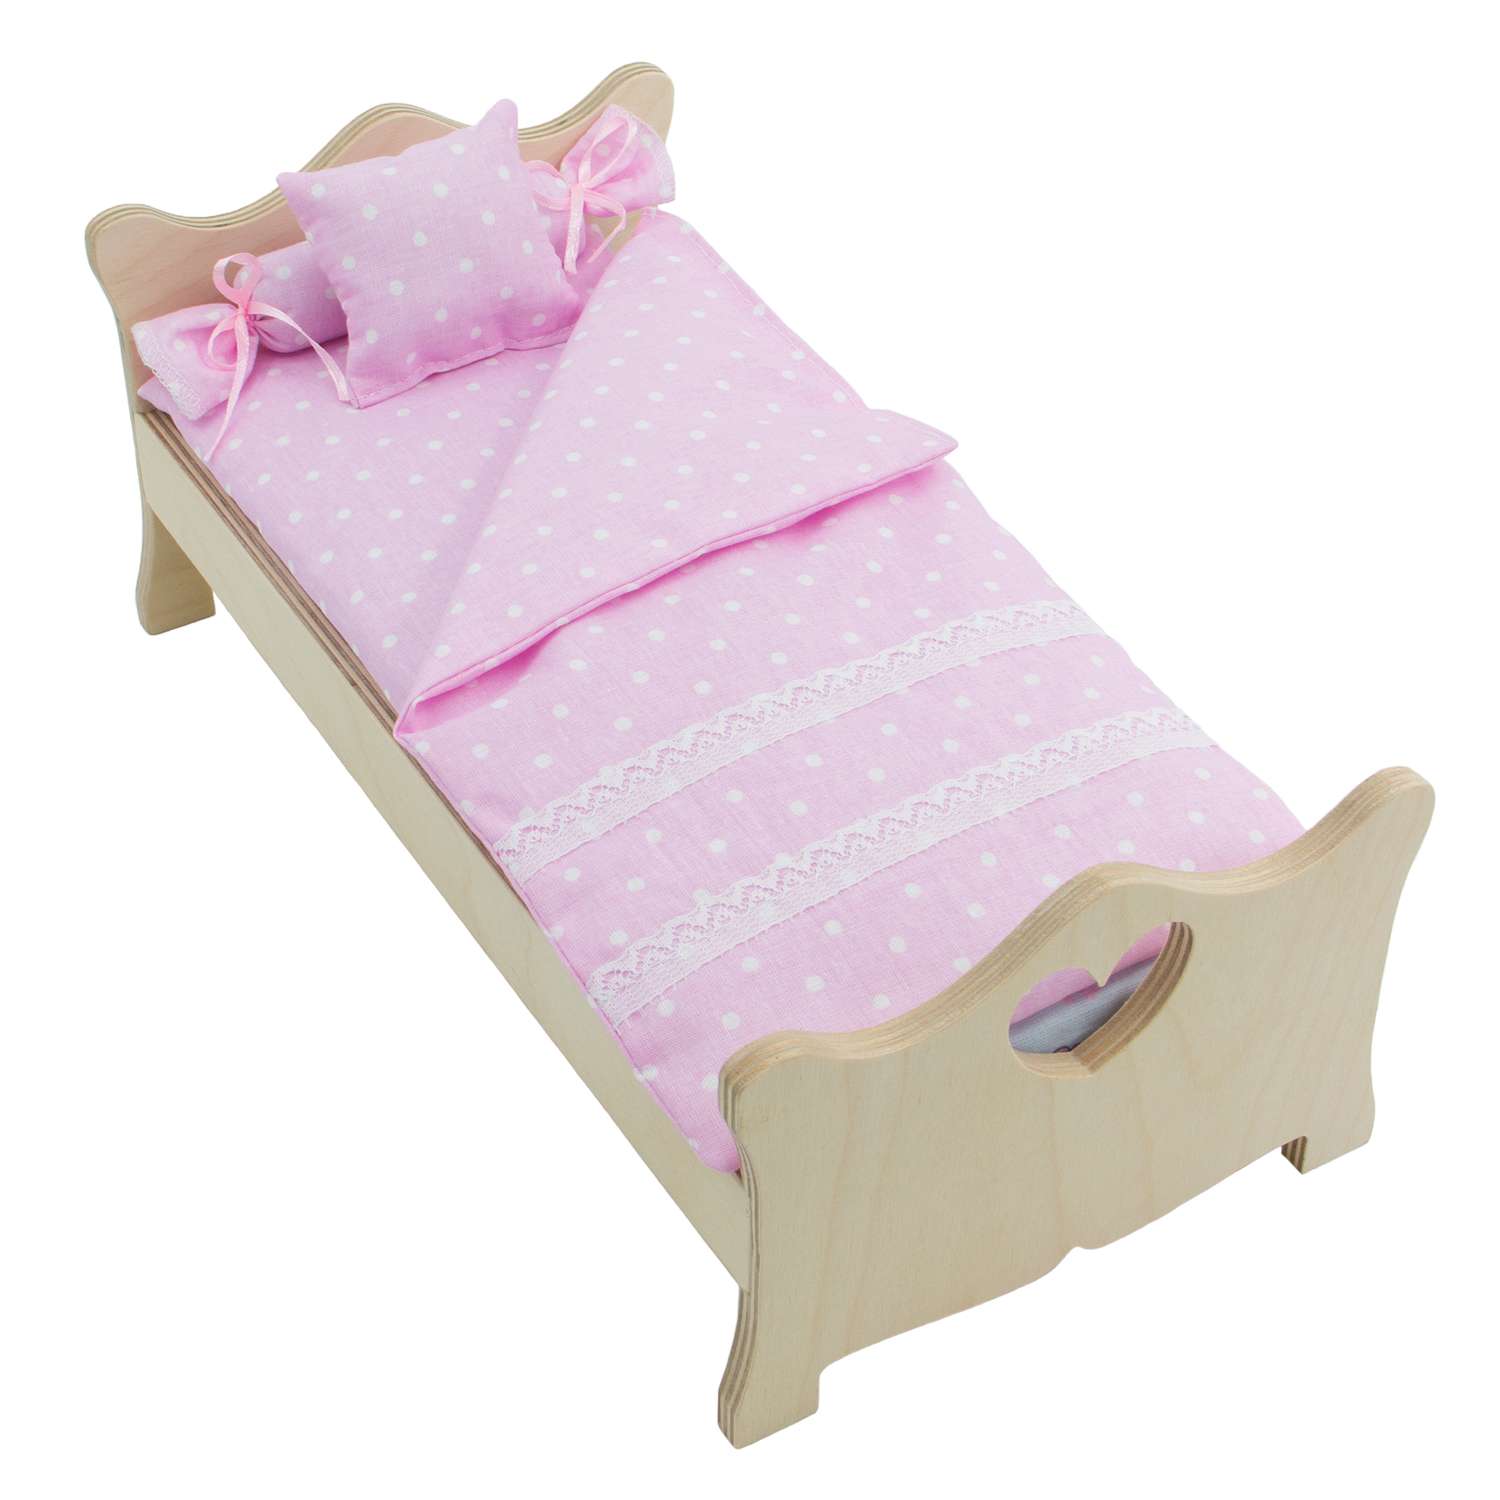 Комлпект постельного белья Модница для куклы 29 см пастельно-розовый 2002пастельно-розовый - фото 2